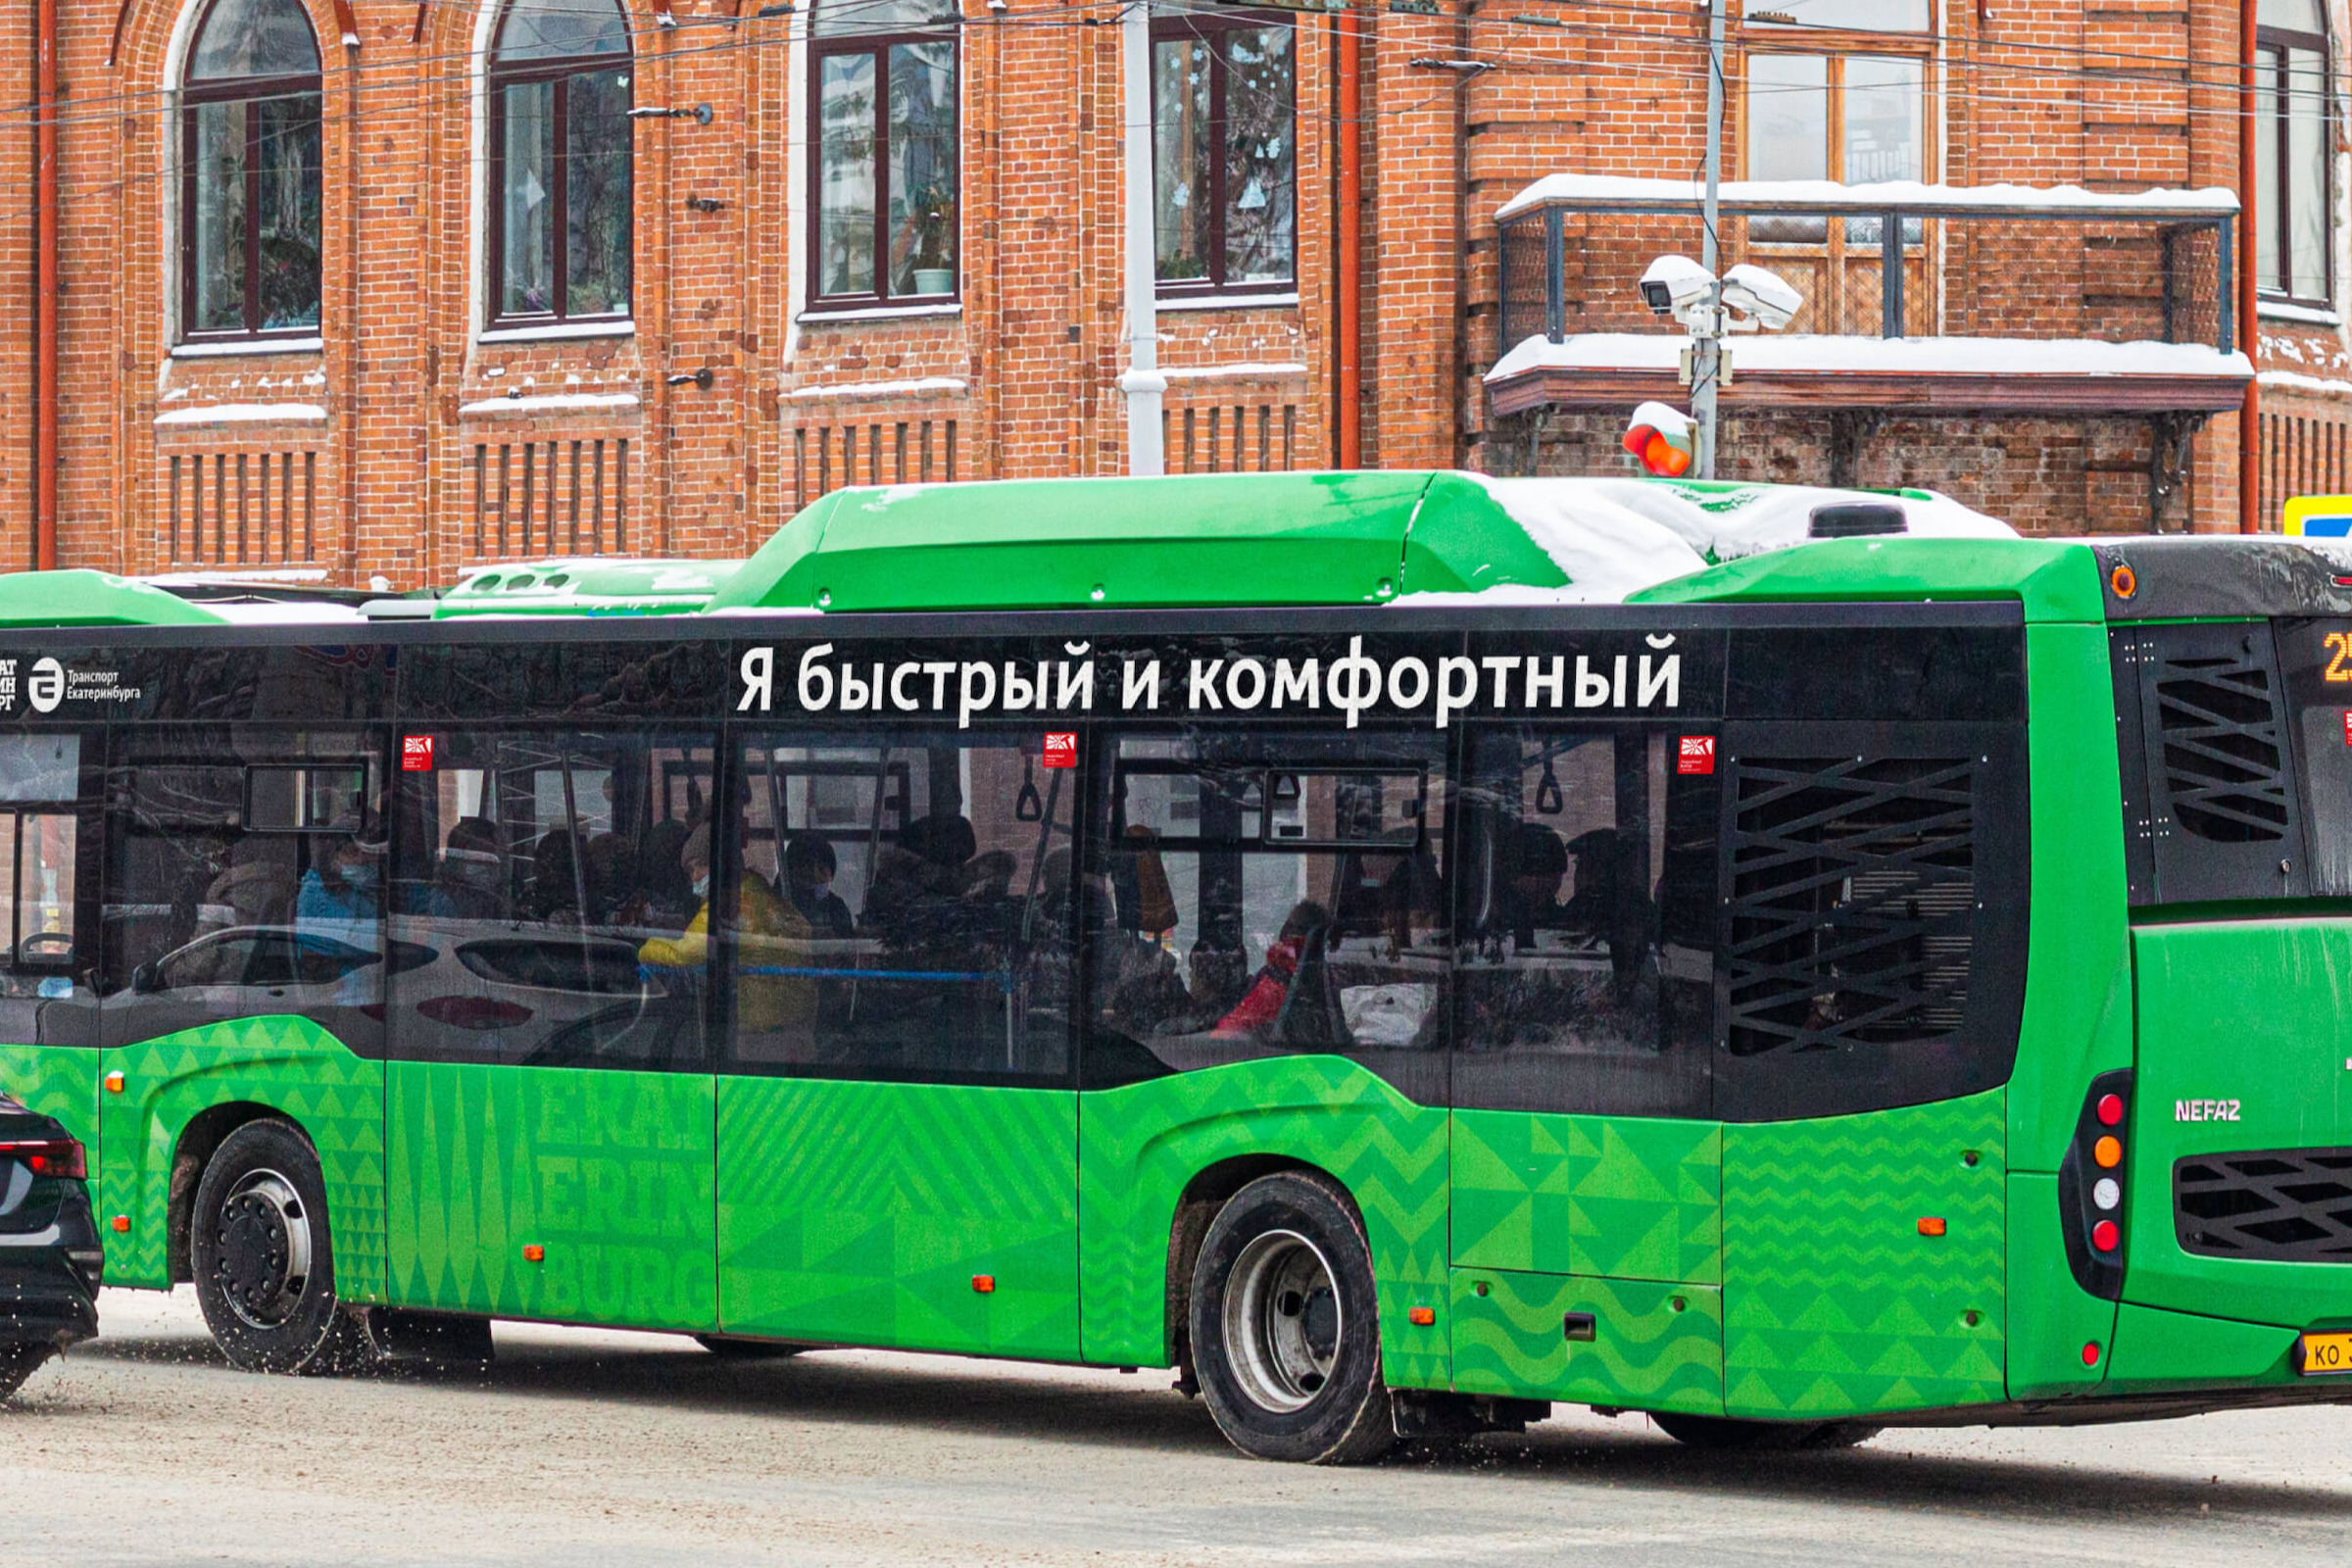 Автобусы и трамваи Екатеринбурга круто изменятся: как будет выглядеть транспорт будущего